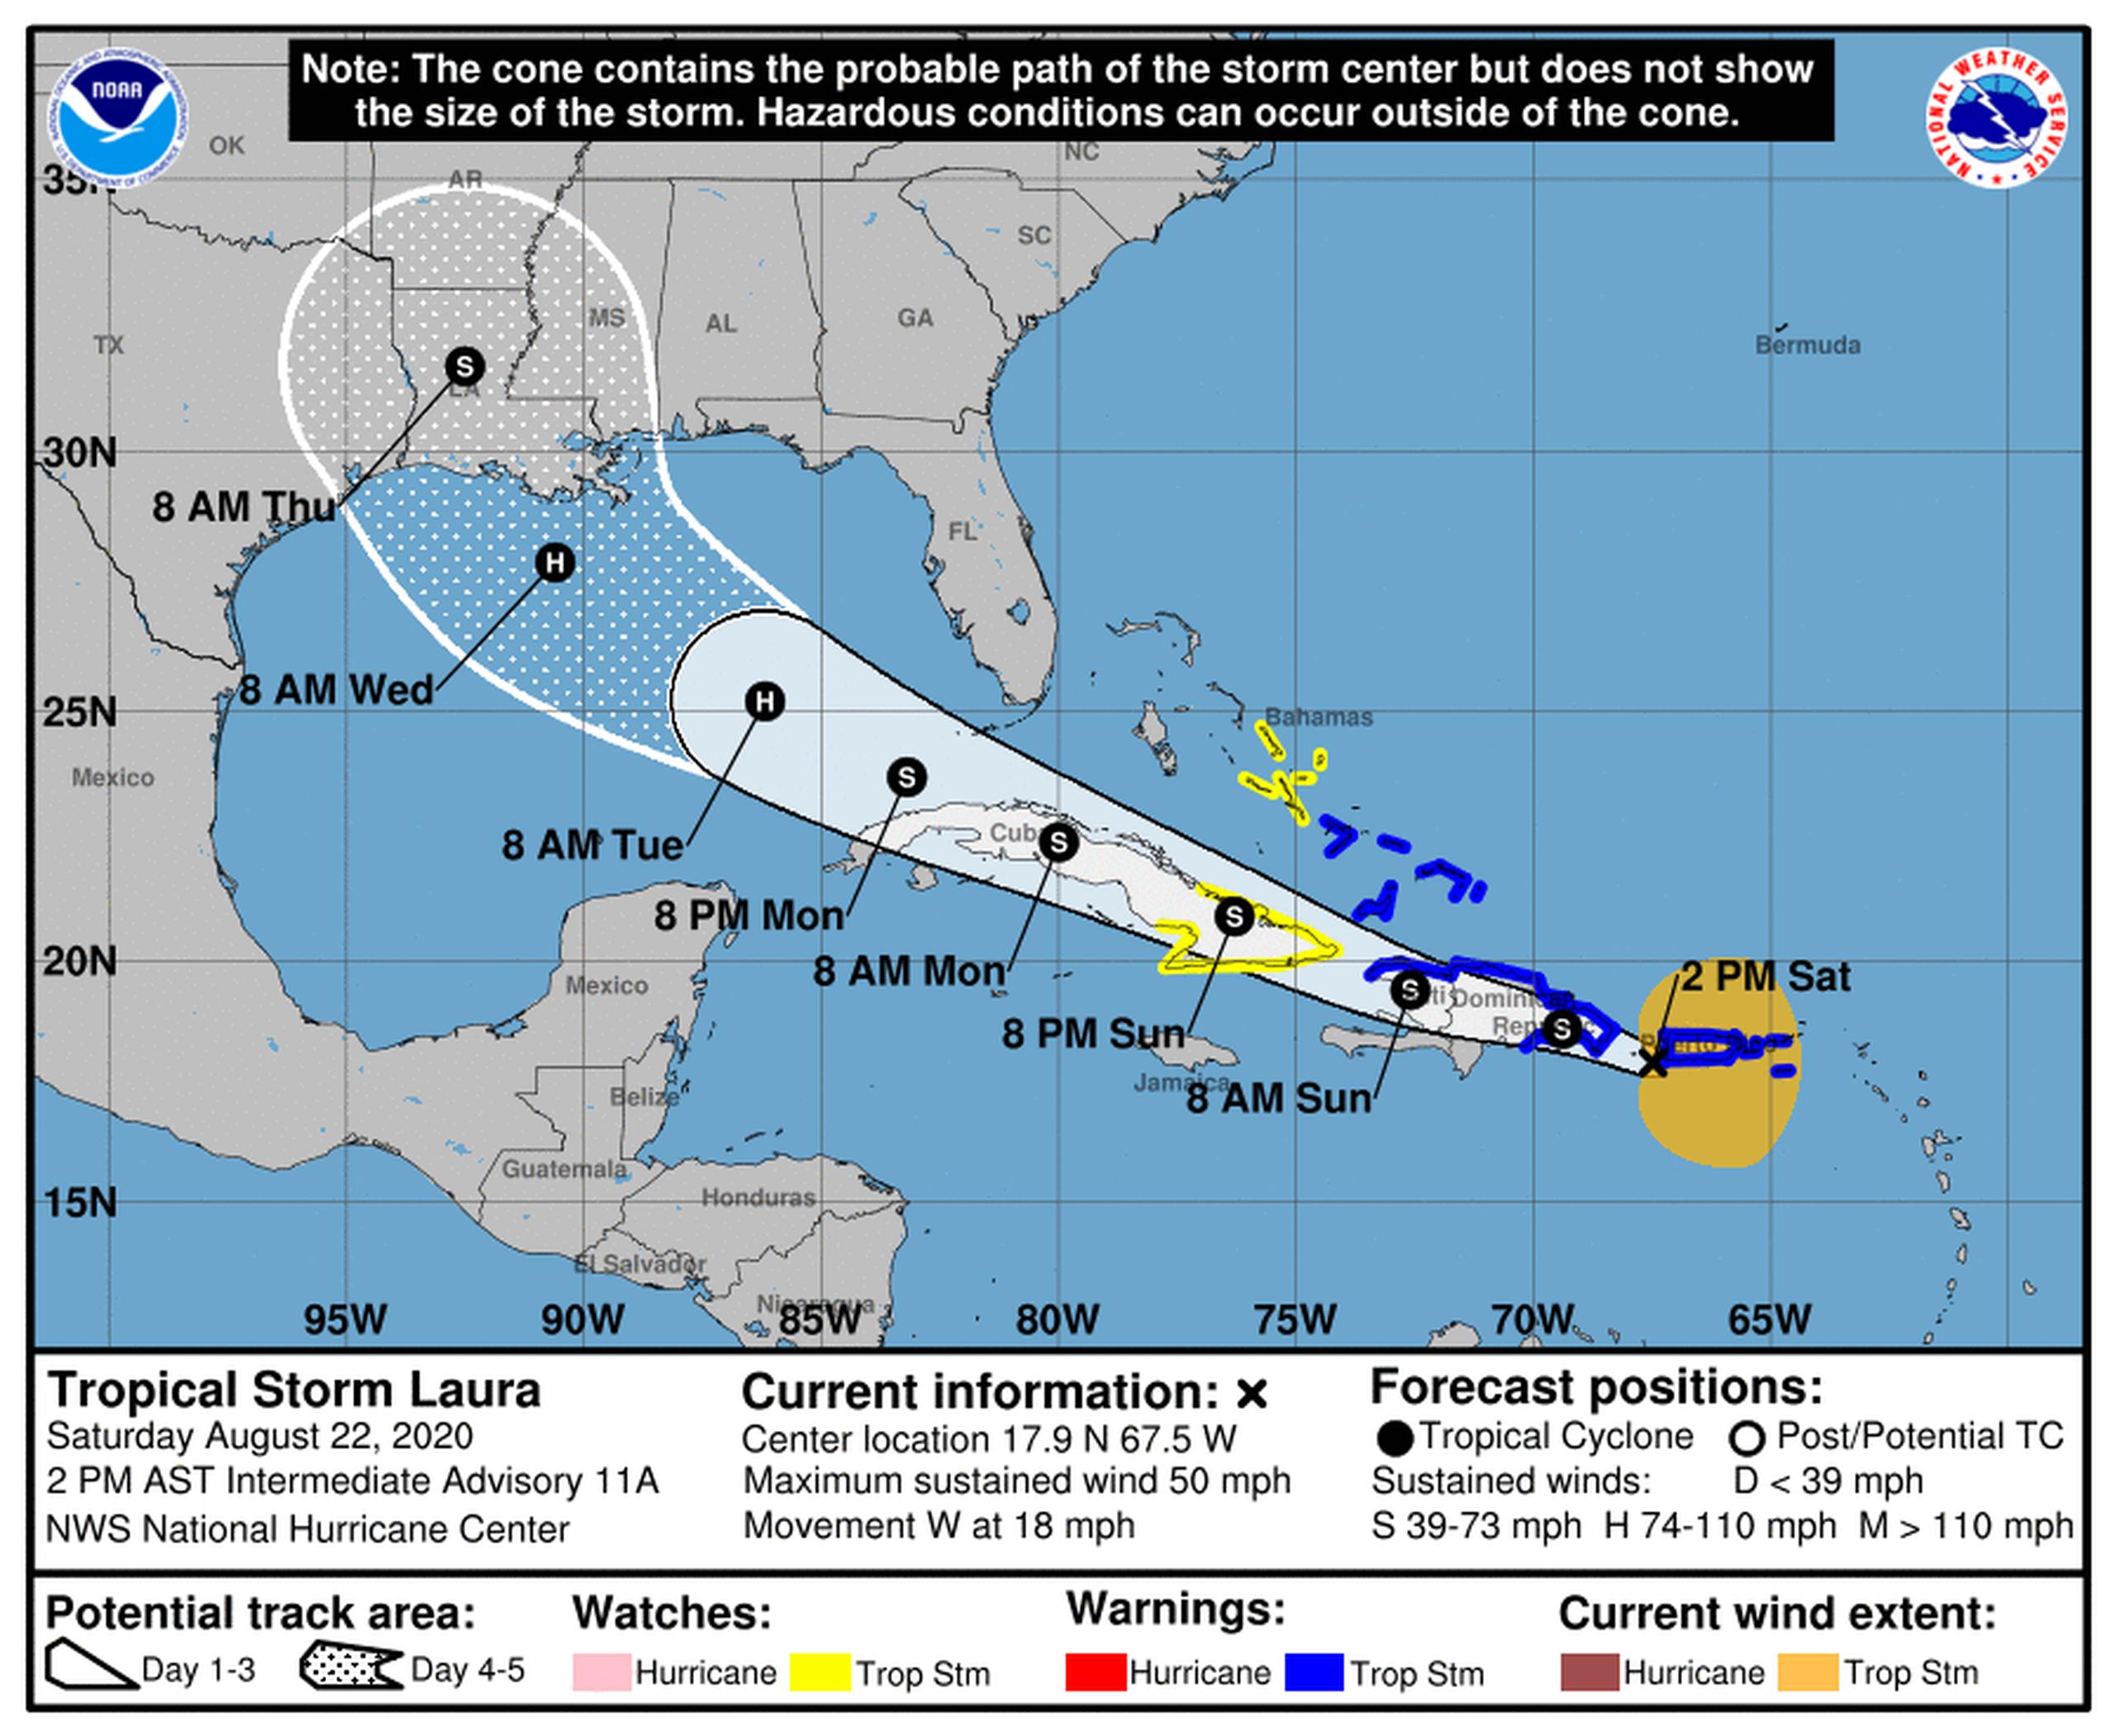 El centro de la tormenta está al sur de Cabo Rojo.